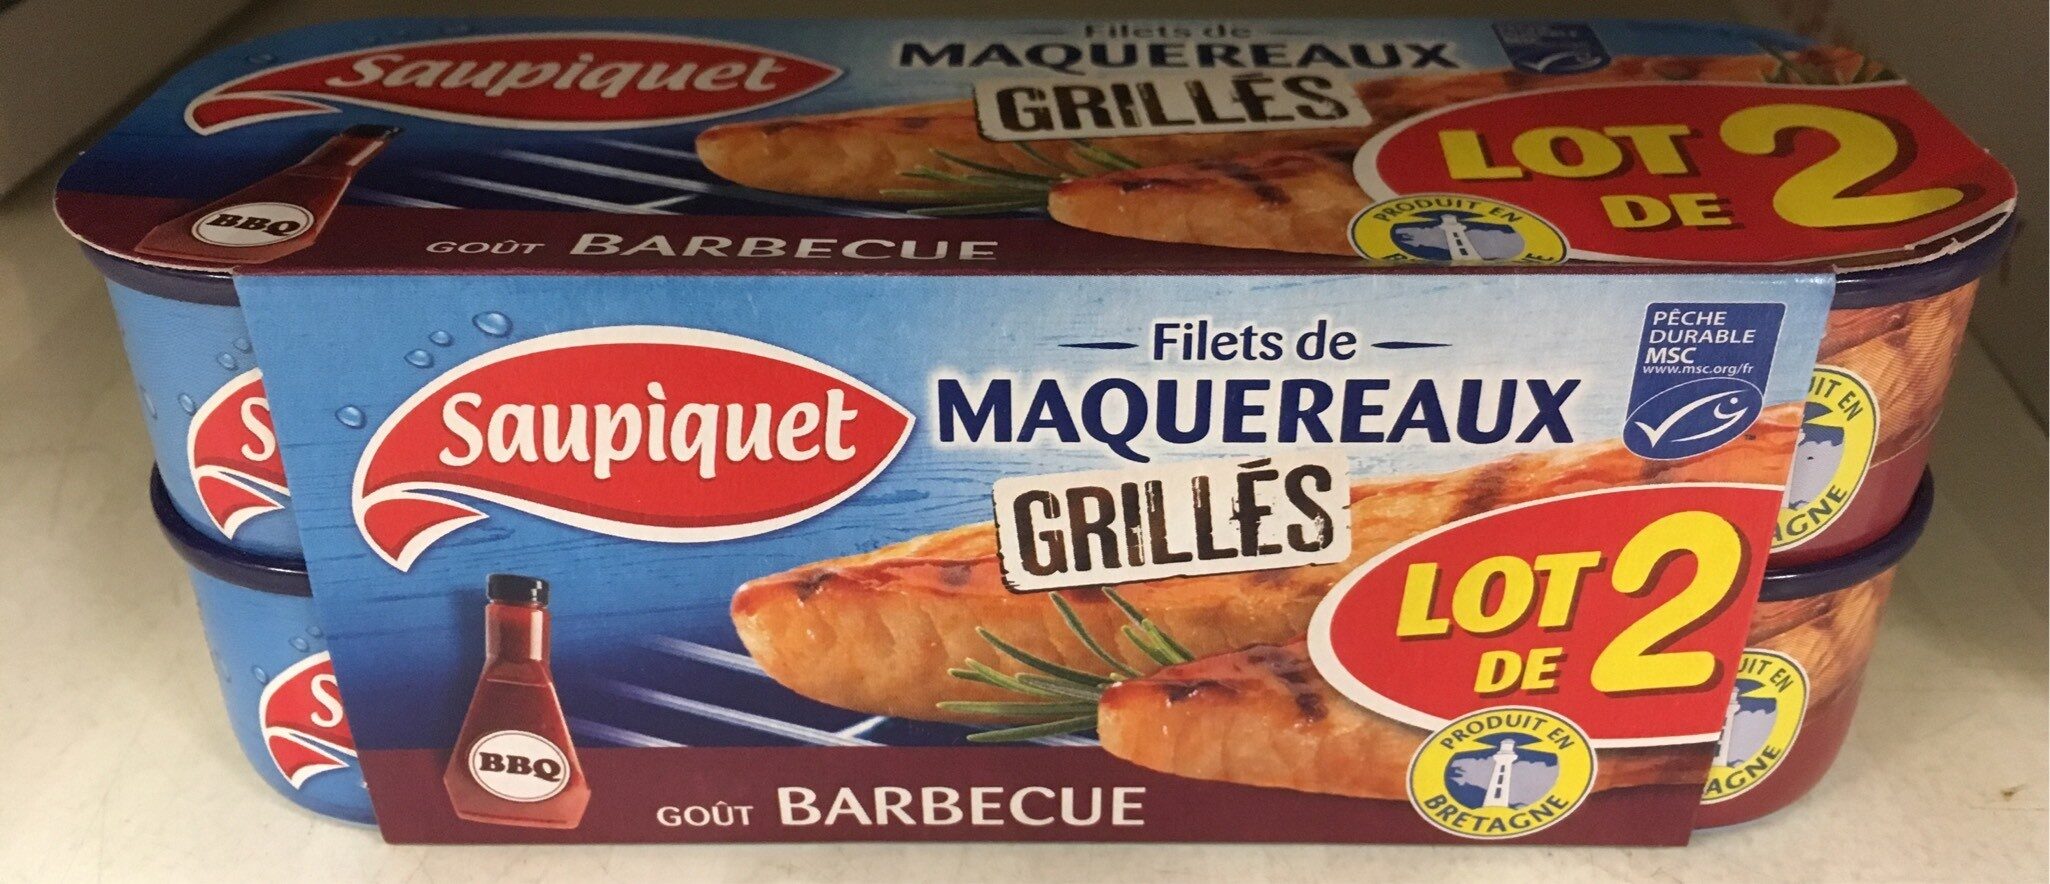 Filets de MAQUEREAUX grillés - Product - fr